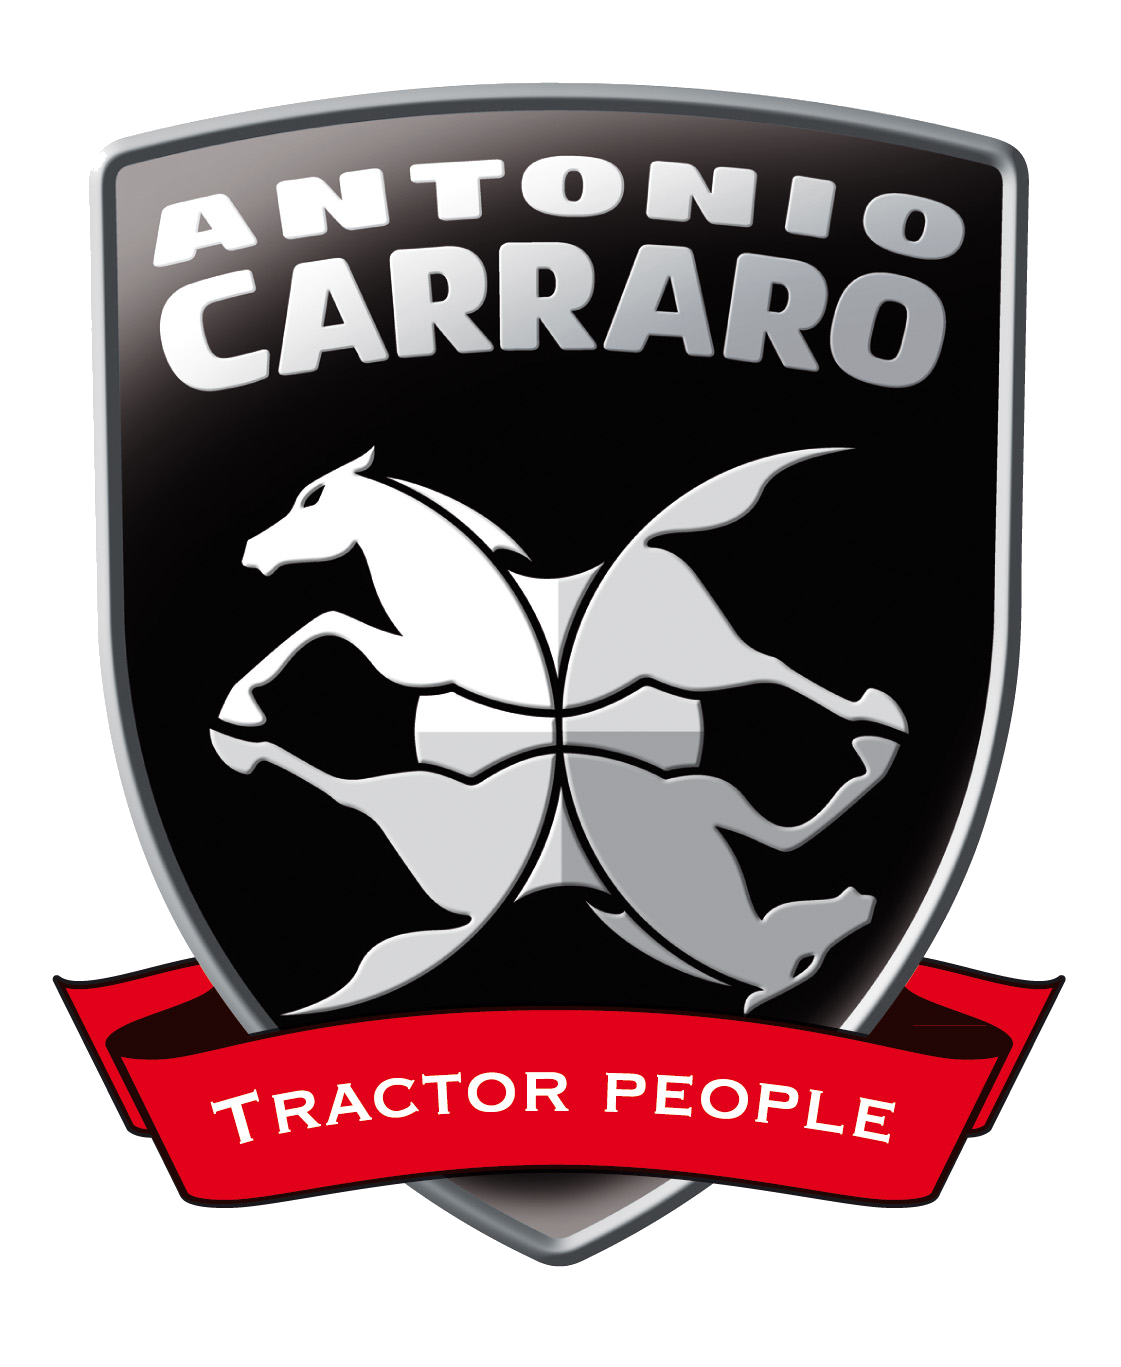 Antonio Carraro - tractors